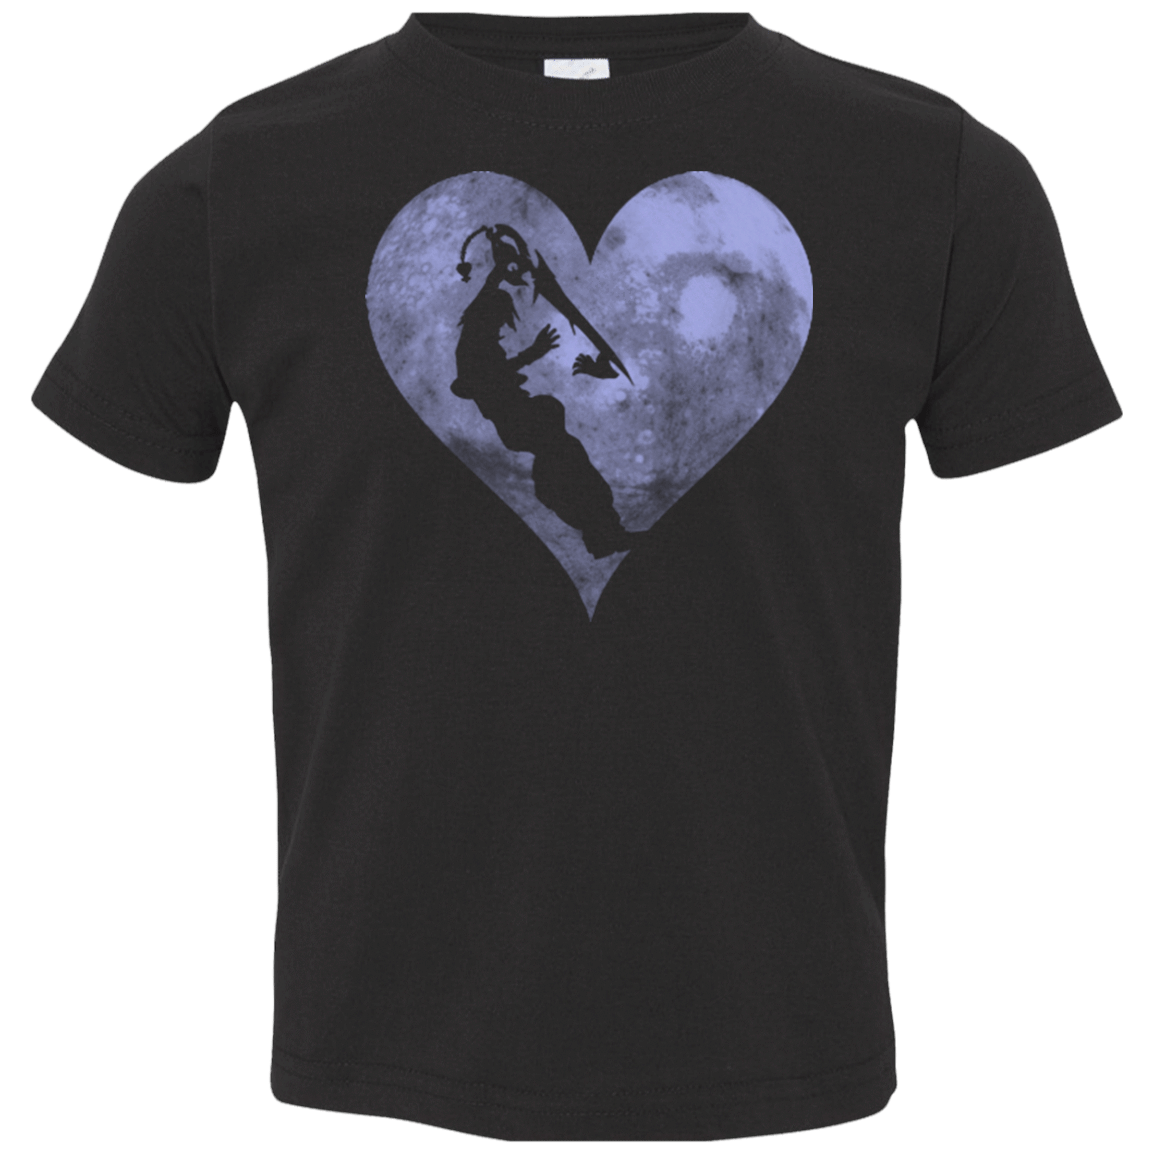 T-Shirts Black / 2T RIKUS HEART Toddler Premium T-Shirt